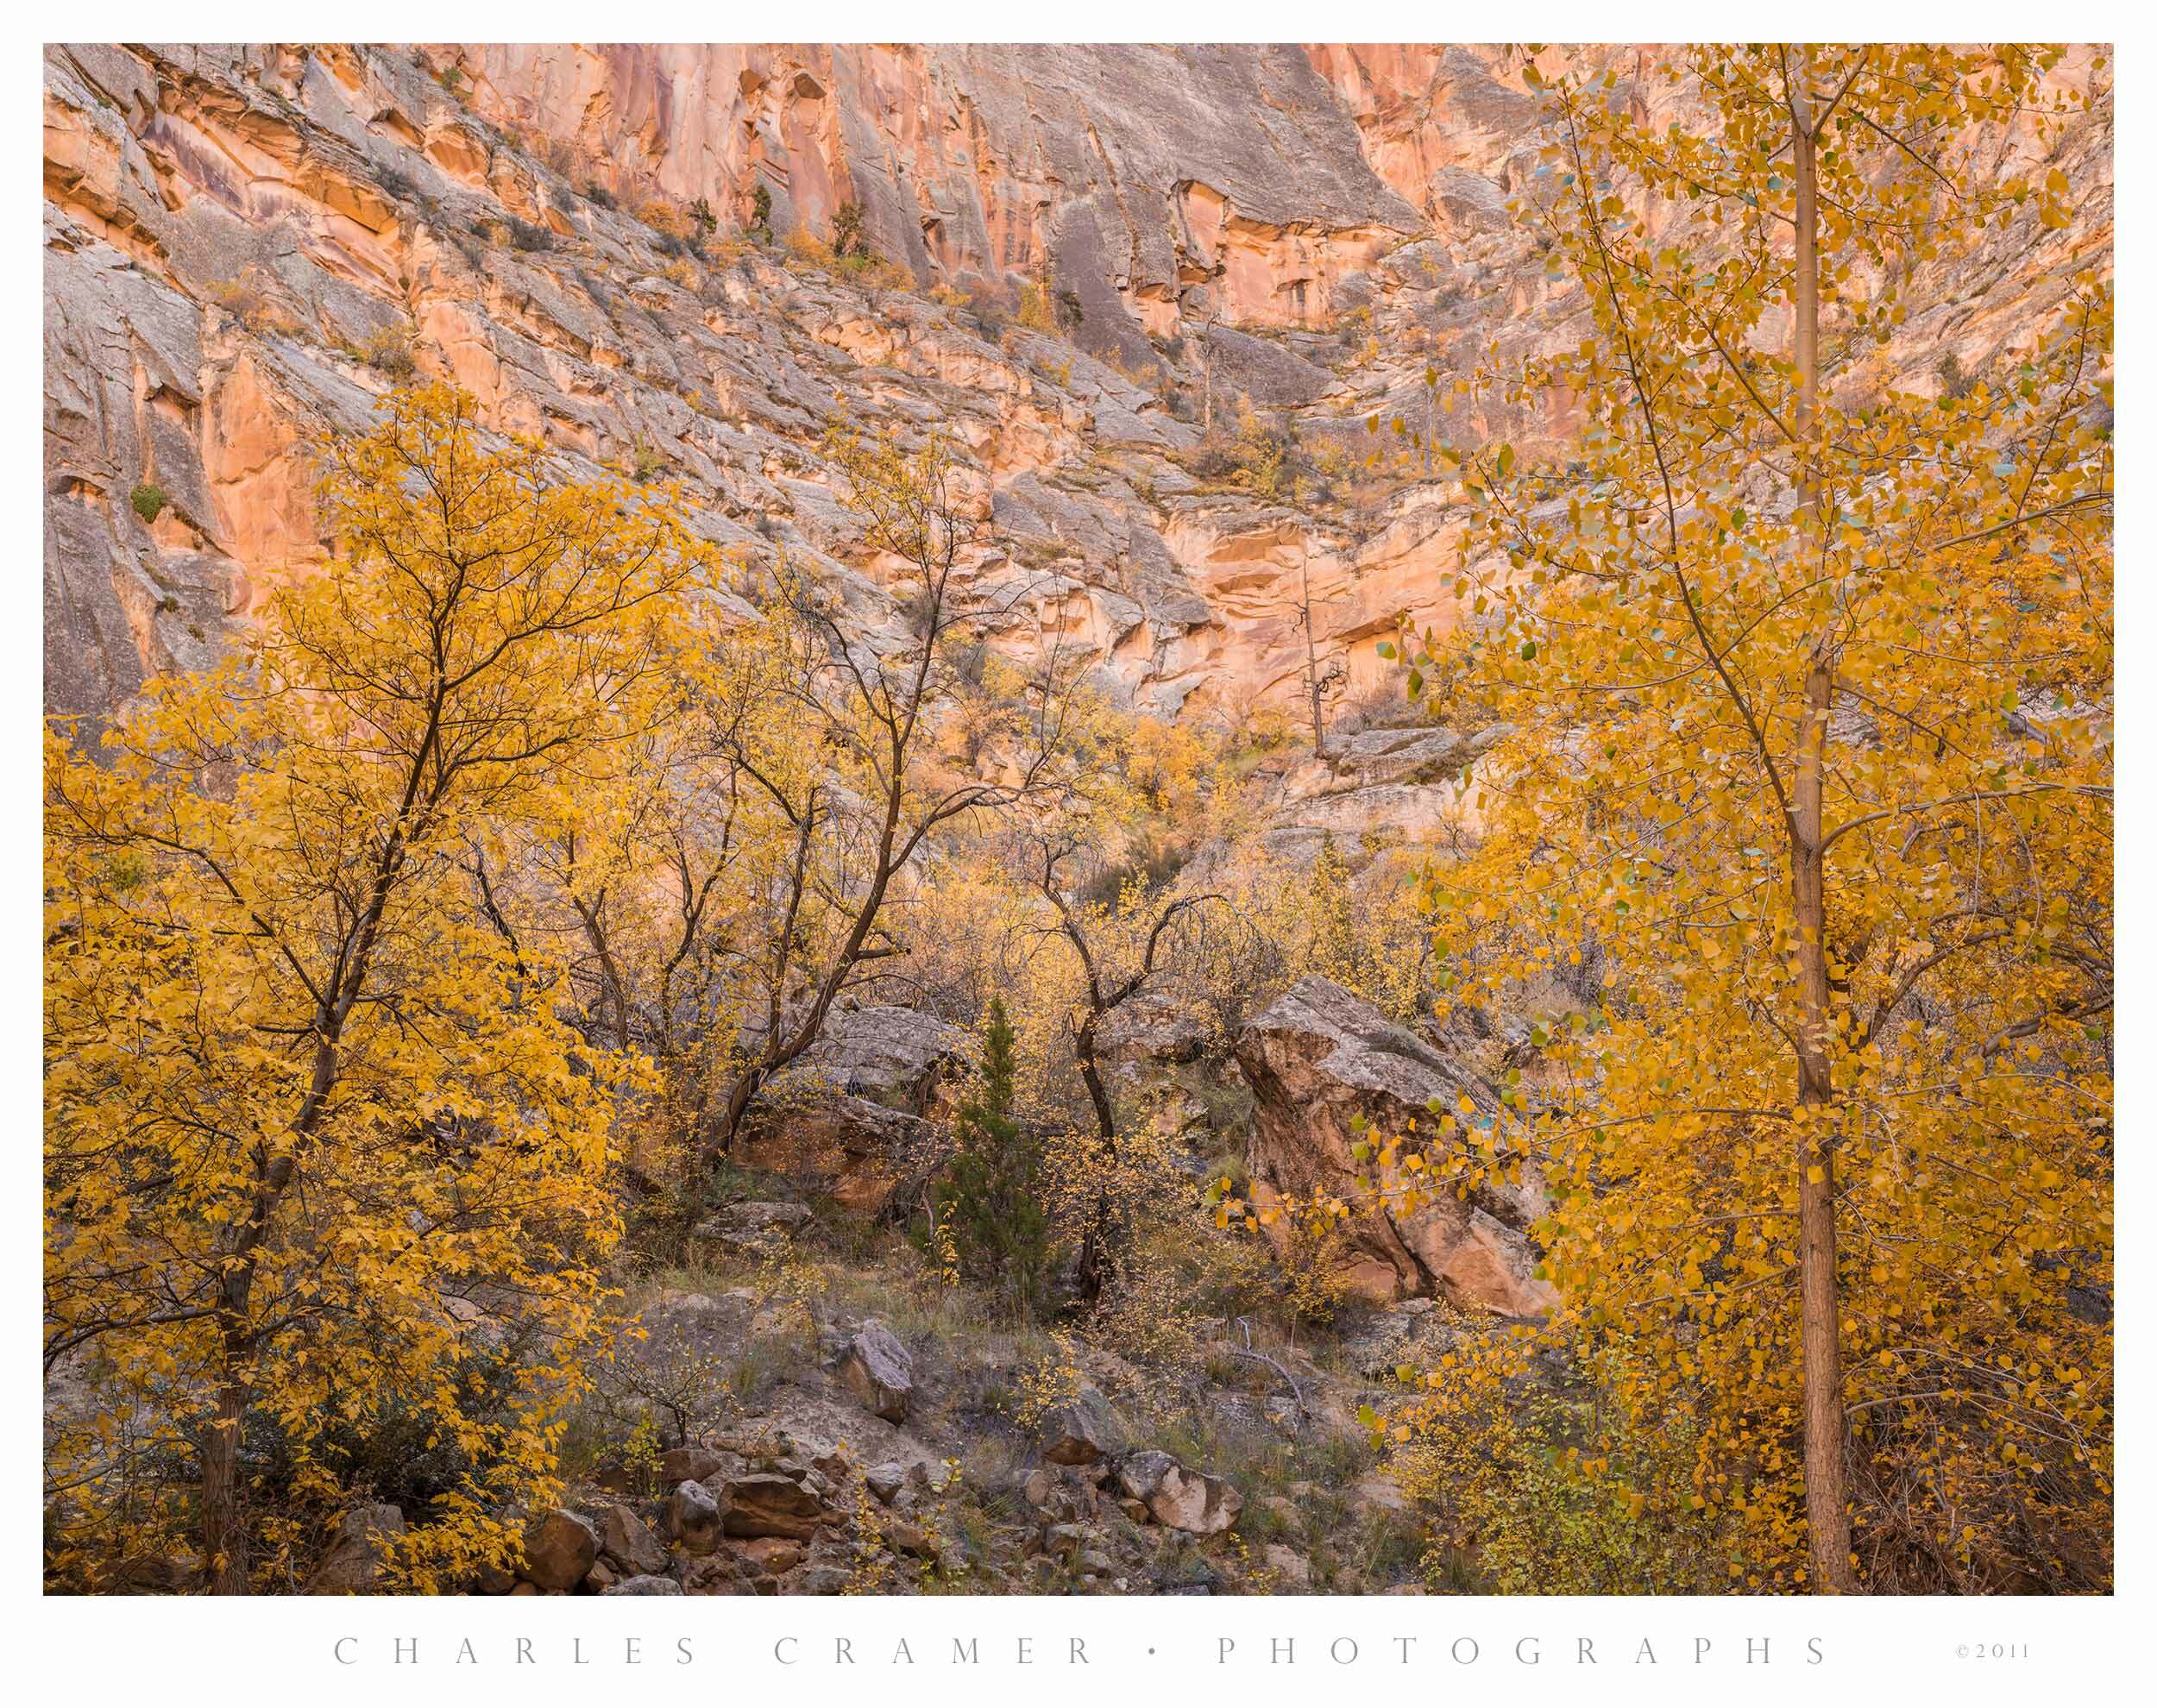 Canyon Wall and Trees, Escalante River Canyon, Utah